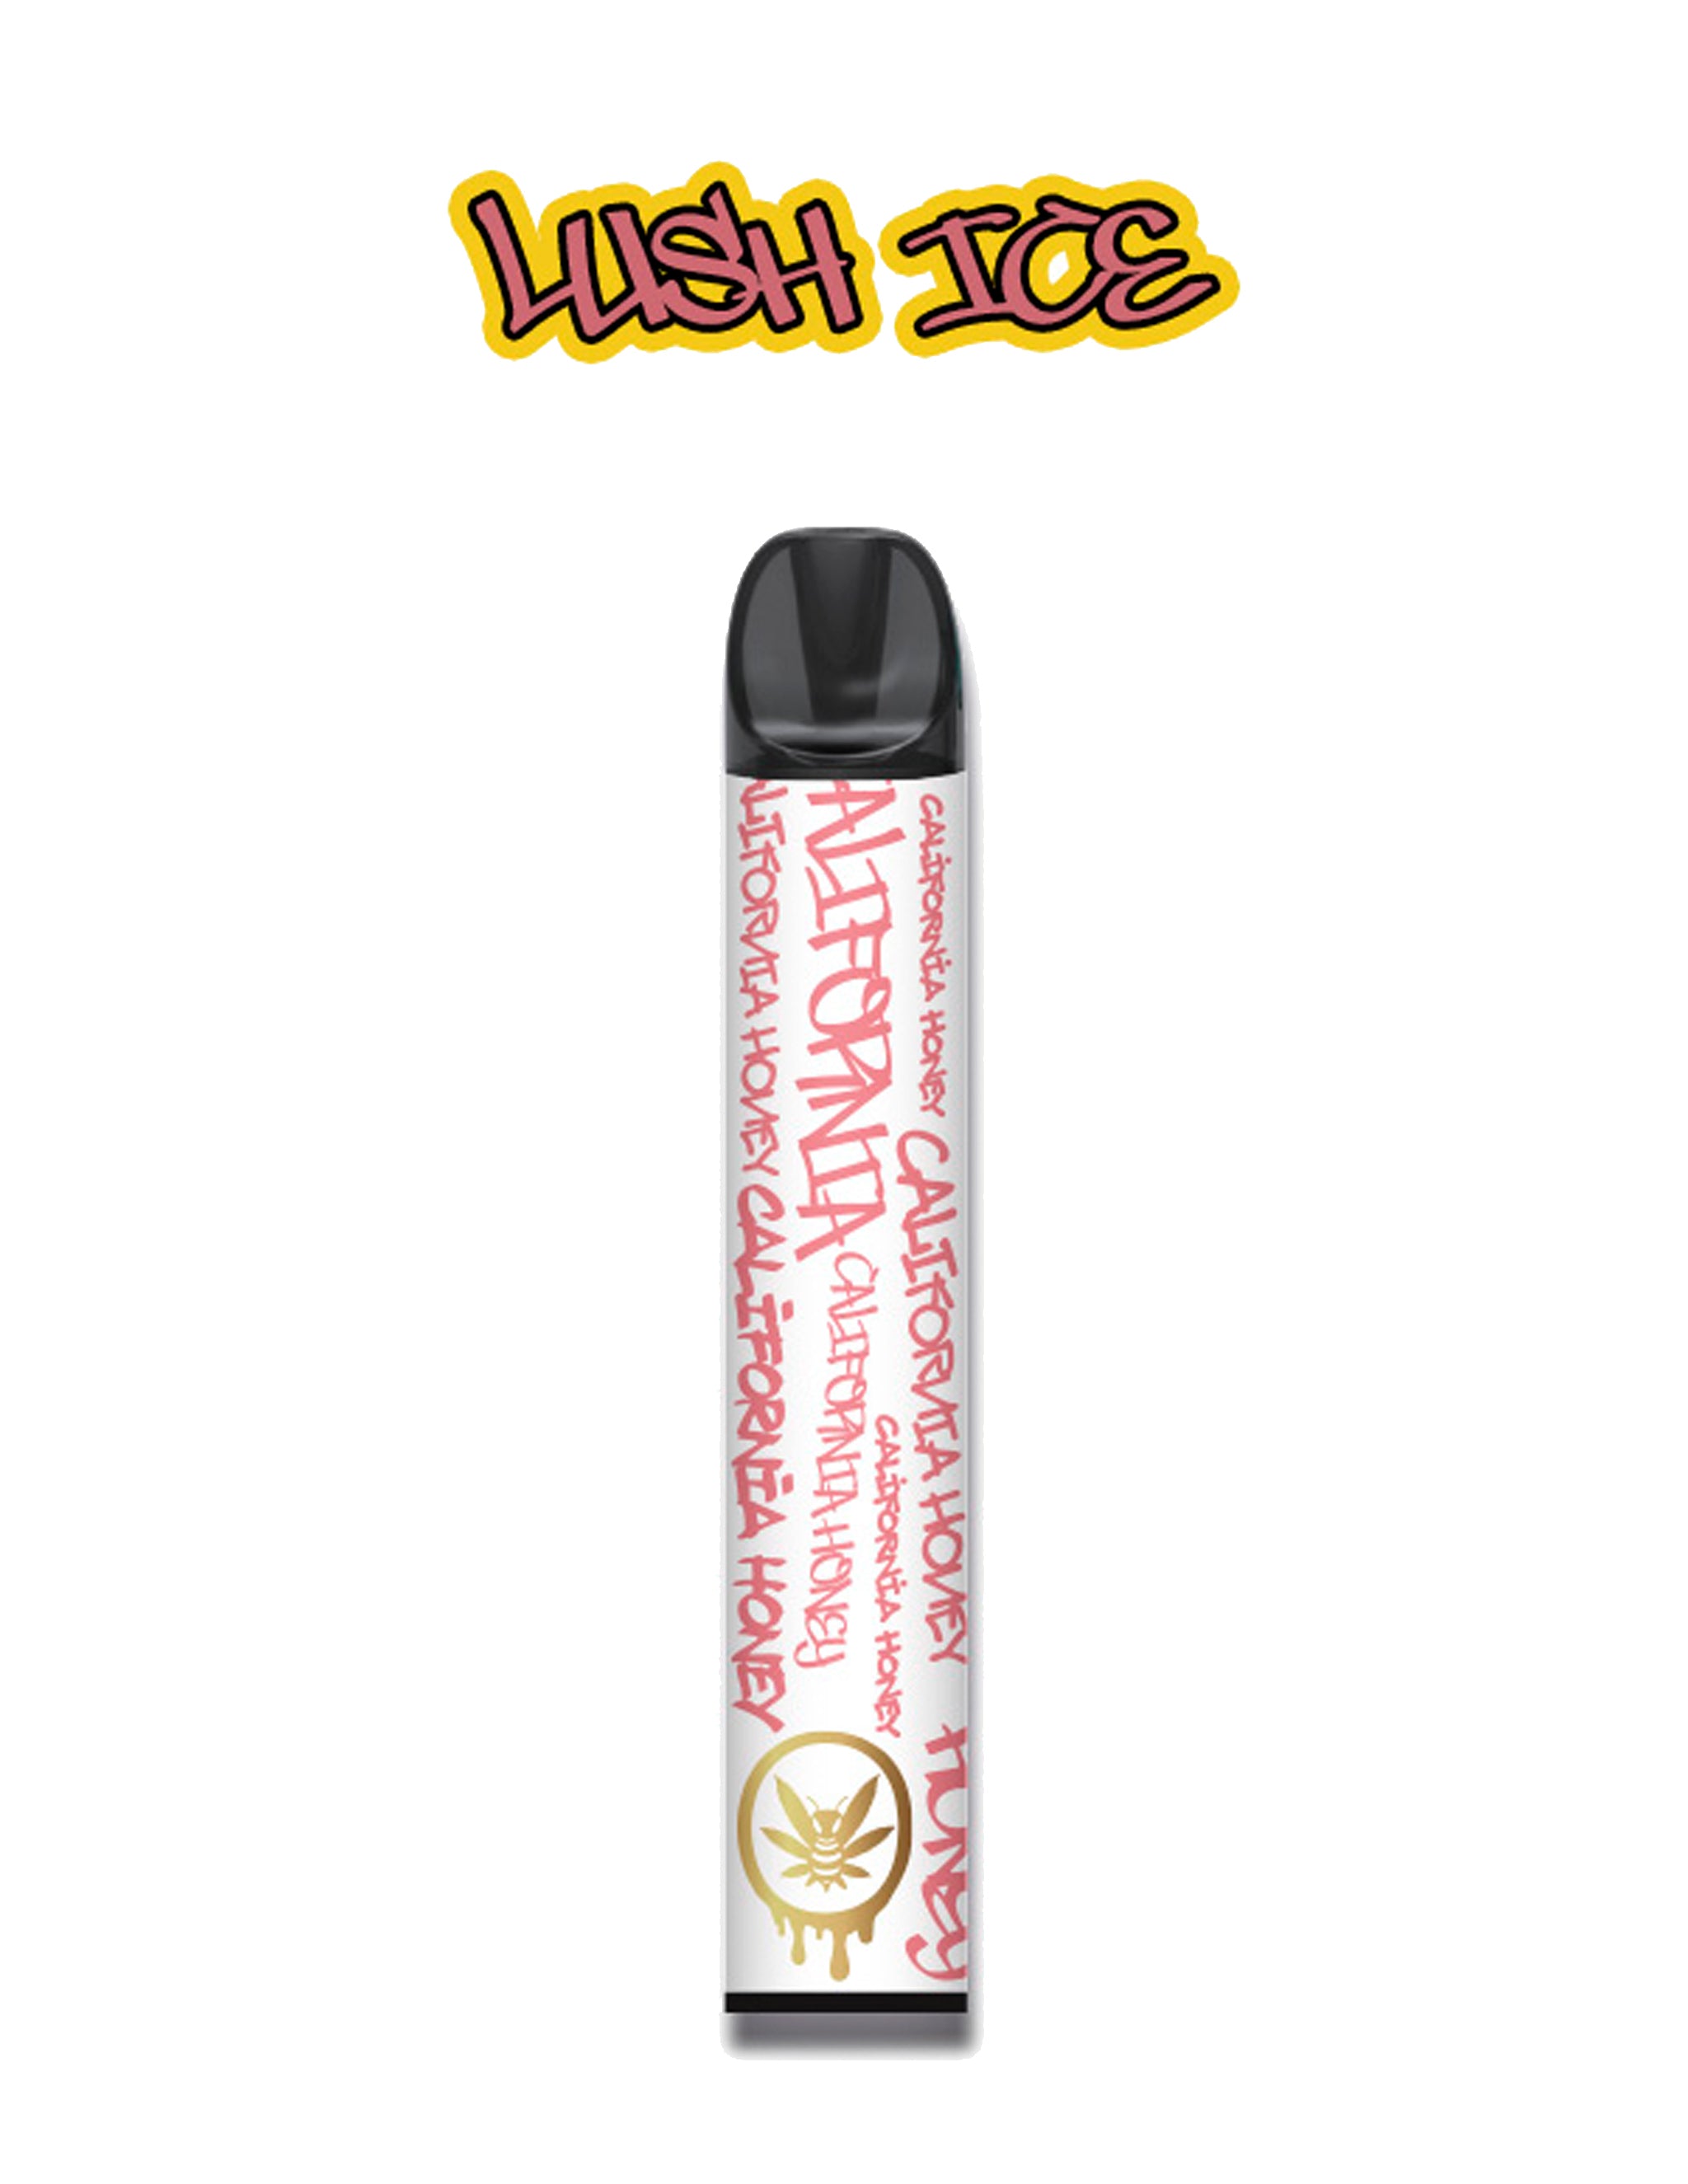 Nicotine Free Vape - Lush Ice